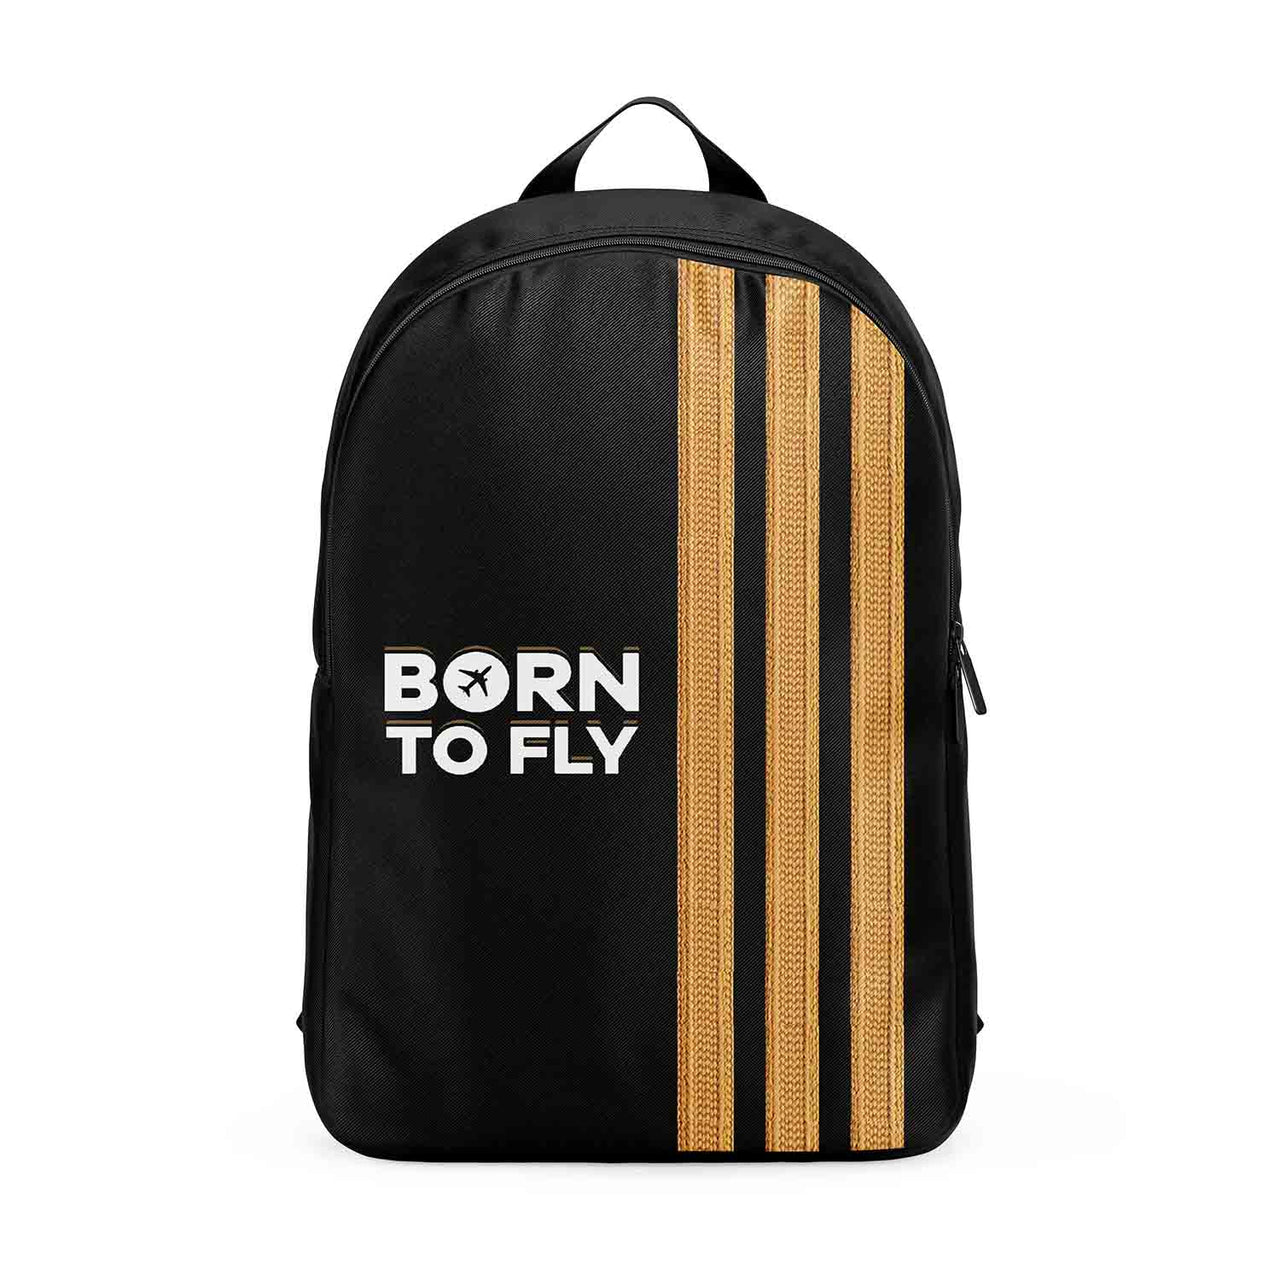 Born To Fly & Pilot Epaulettes (3 Lines) Designed Backpacks